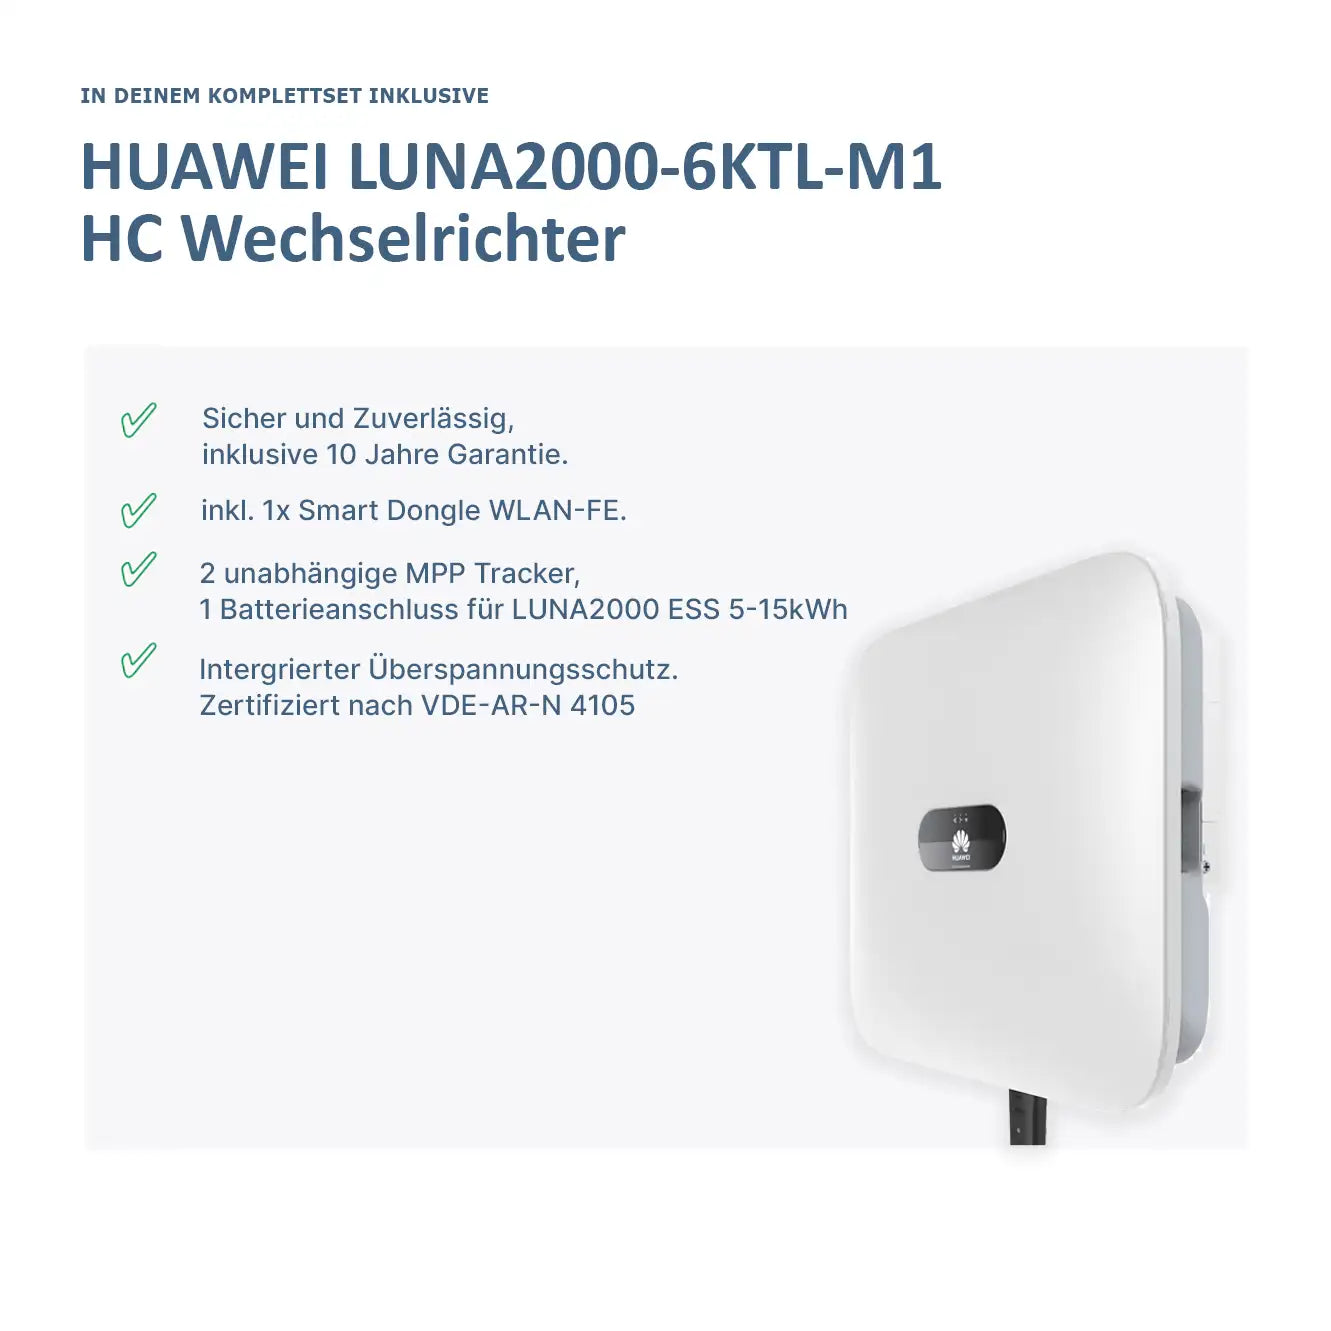 Huawei Wechselrichter 6KW + Huawei Luna 2000-5-s0 Set